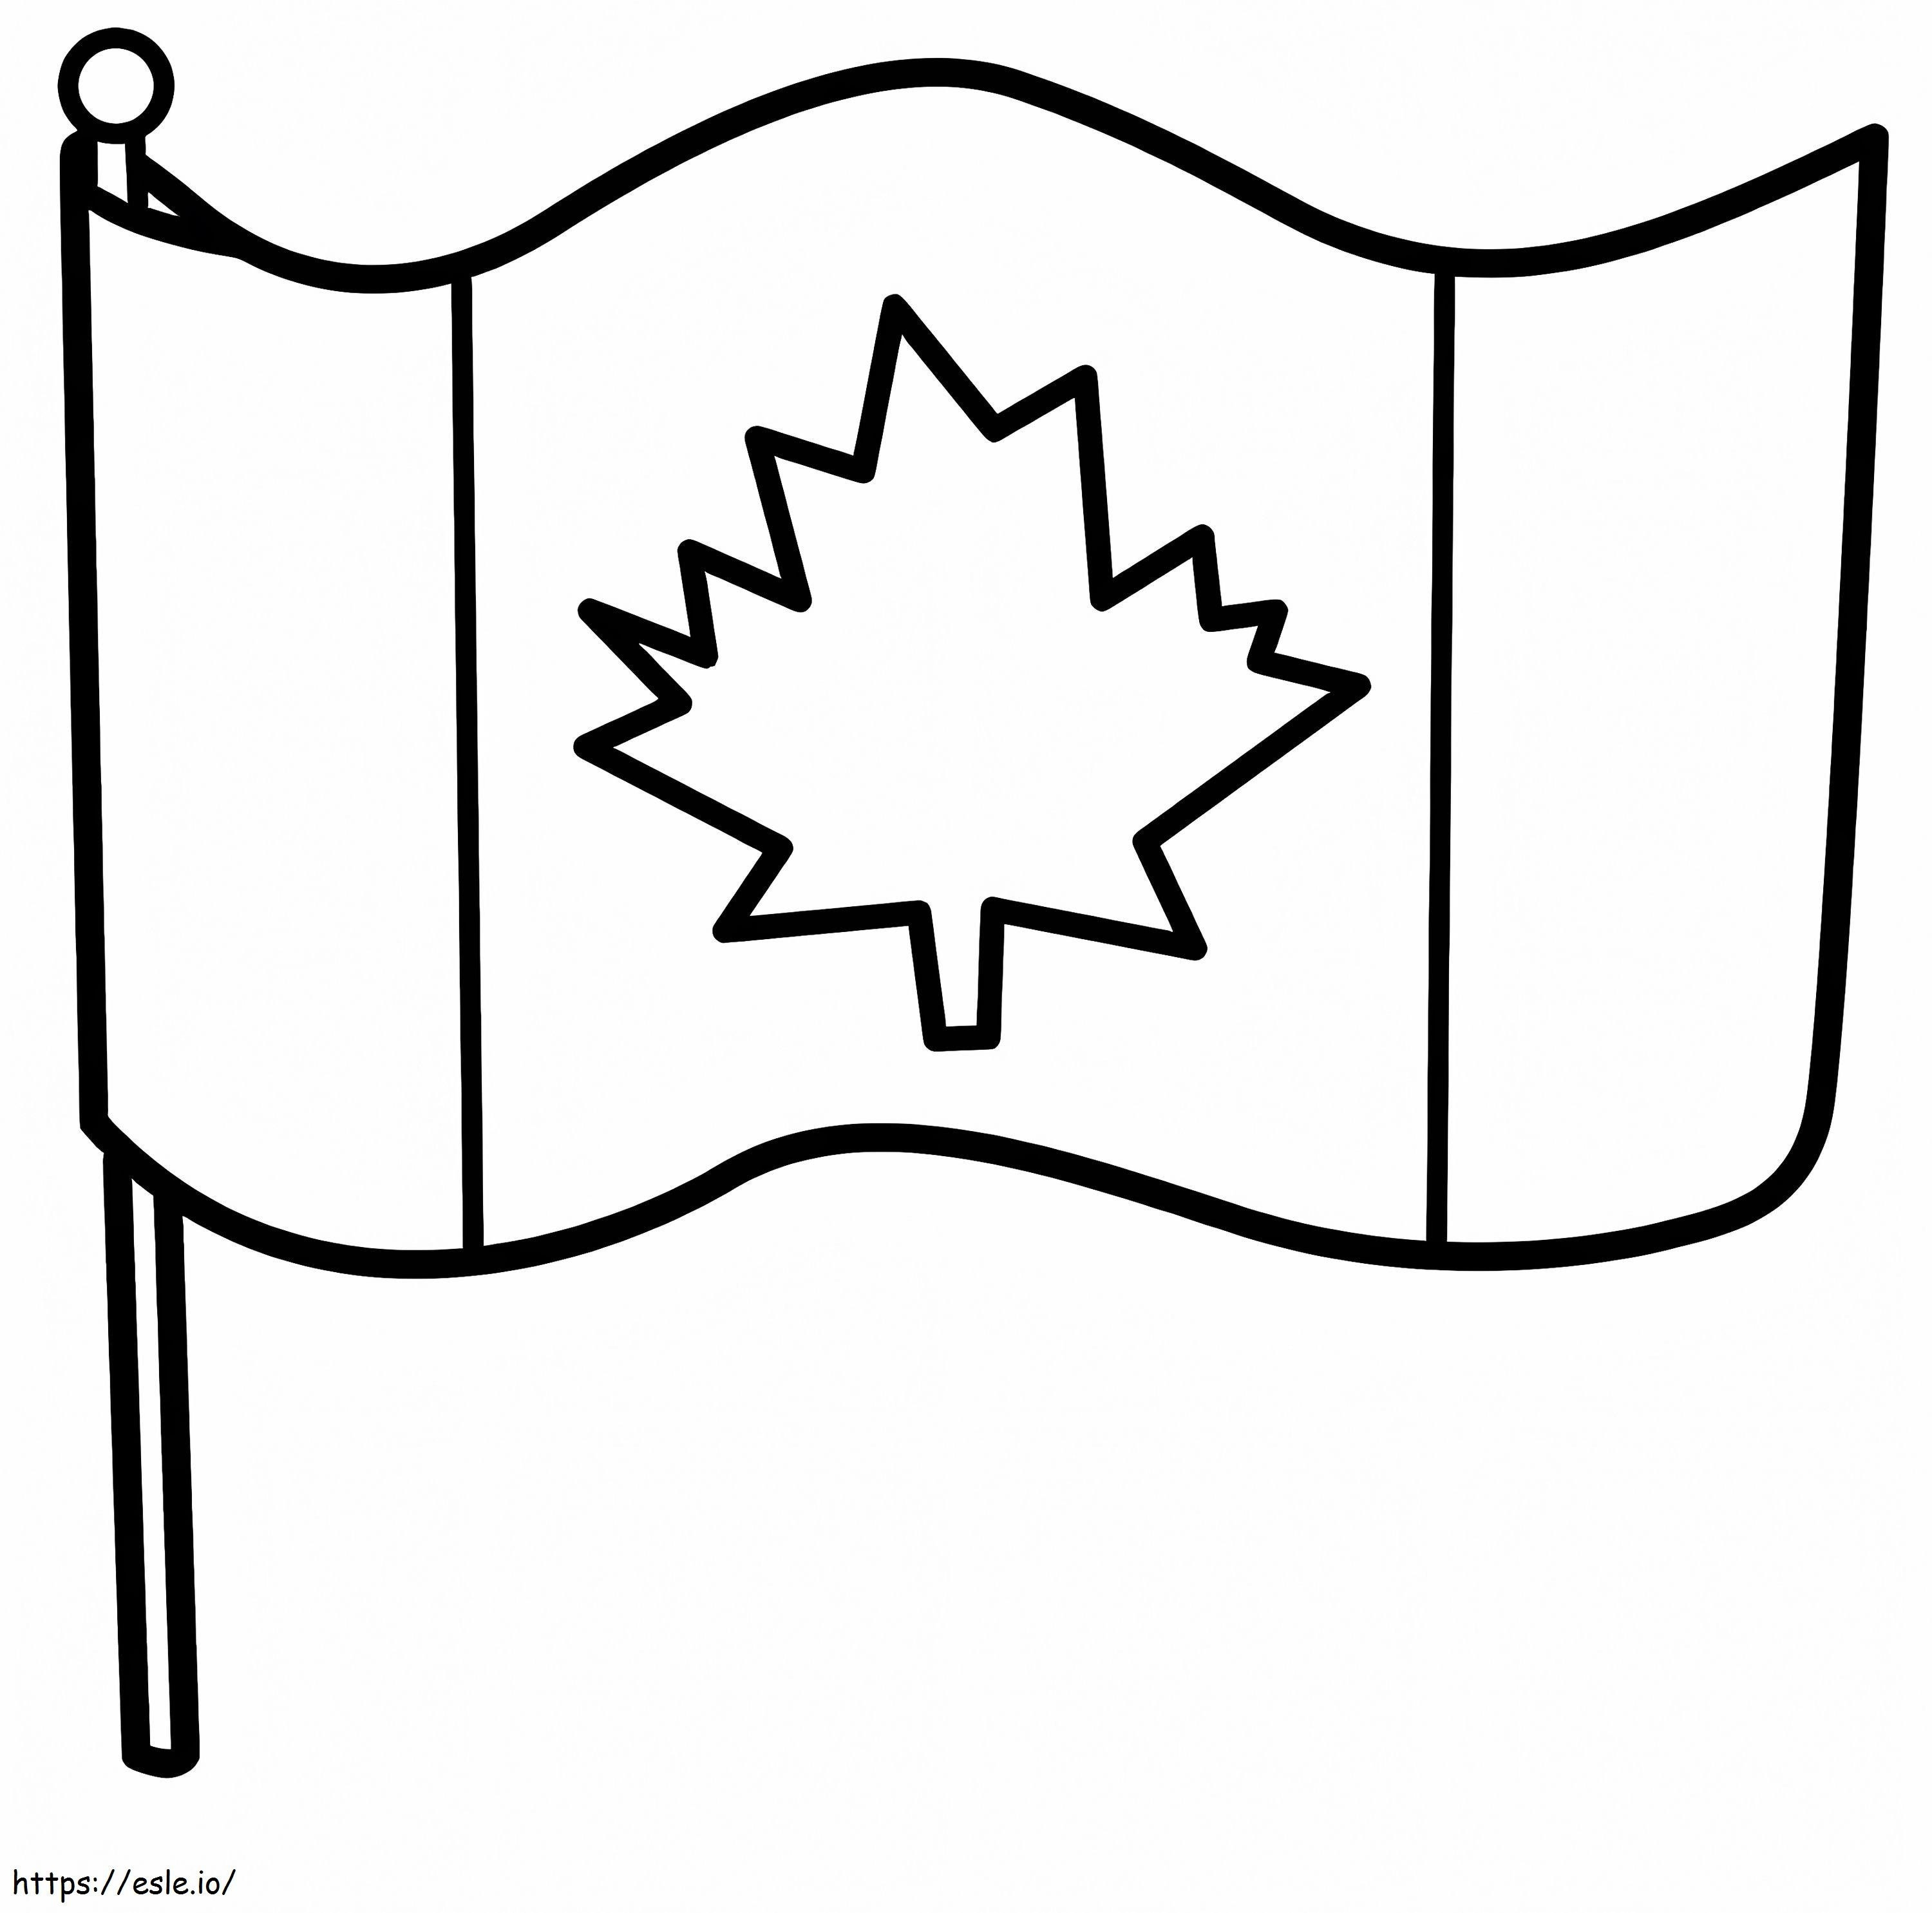 Bandera canadiense 3 para colorear